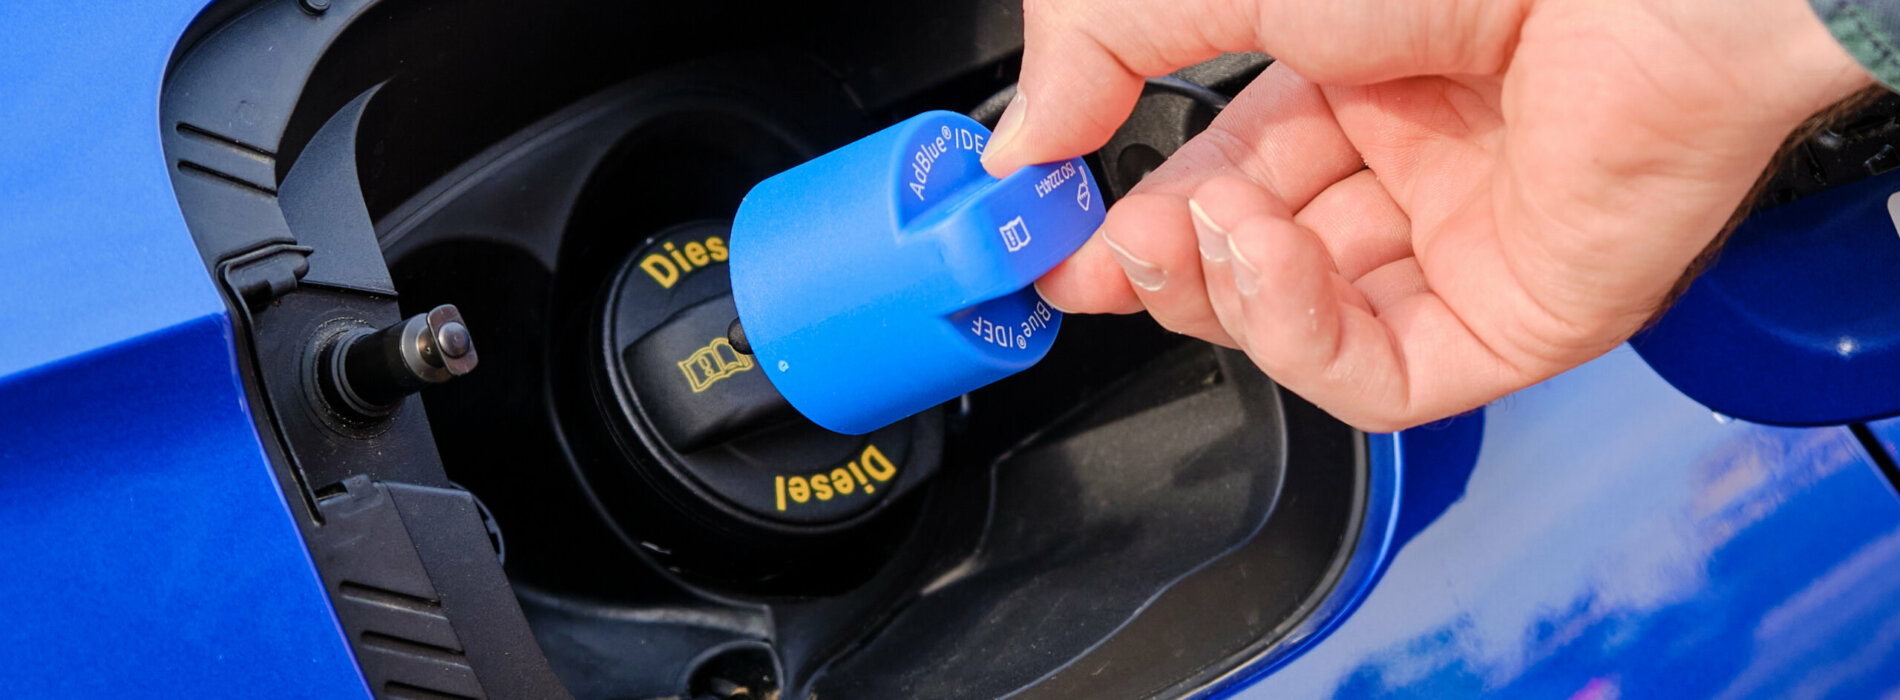 Usuwanie AdBlue to jedyna słuszna inwestycja w celu pozbycia się awarii AdBlue. Jeśli Twój pojazd dotknął problem z AdBlue, to nie ryzykuj i postaw na jedyne skuteczne rozwiązanie, jakim bez wątpienia jest wyłączenie systemu z poziomu sterownika pojazdu!